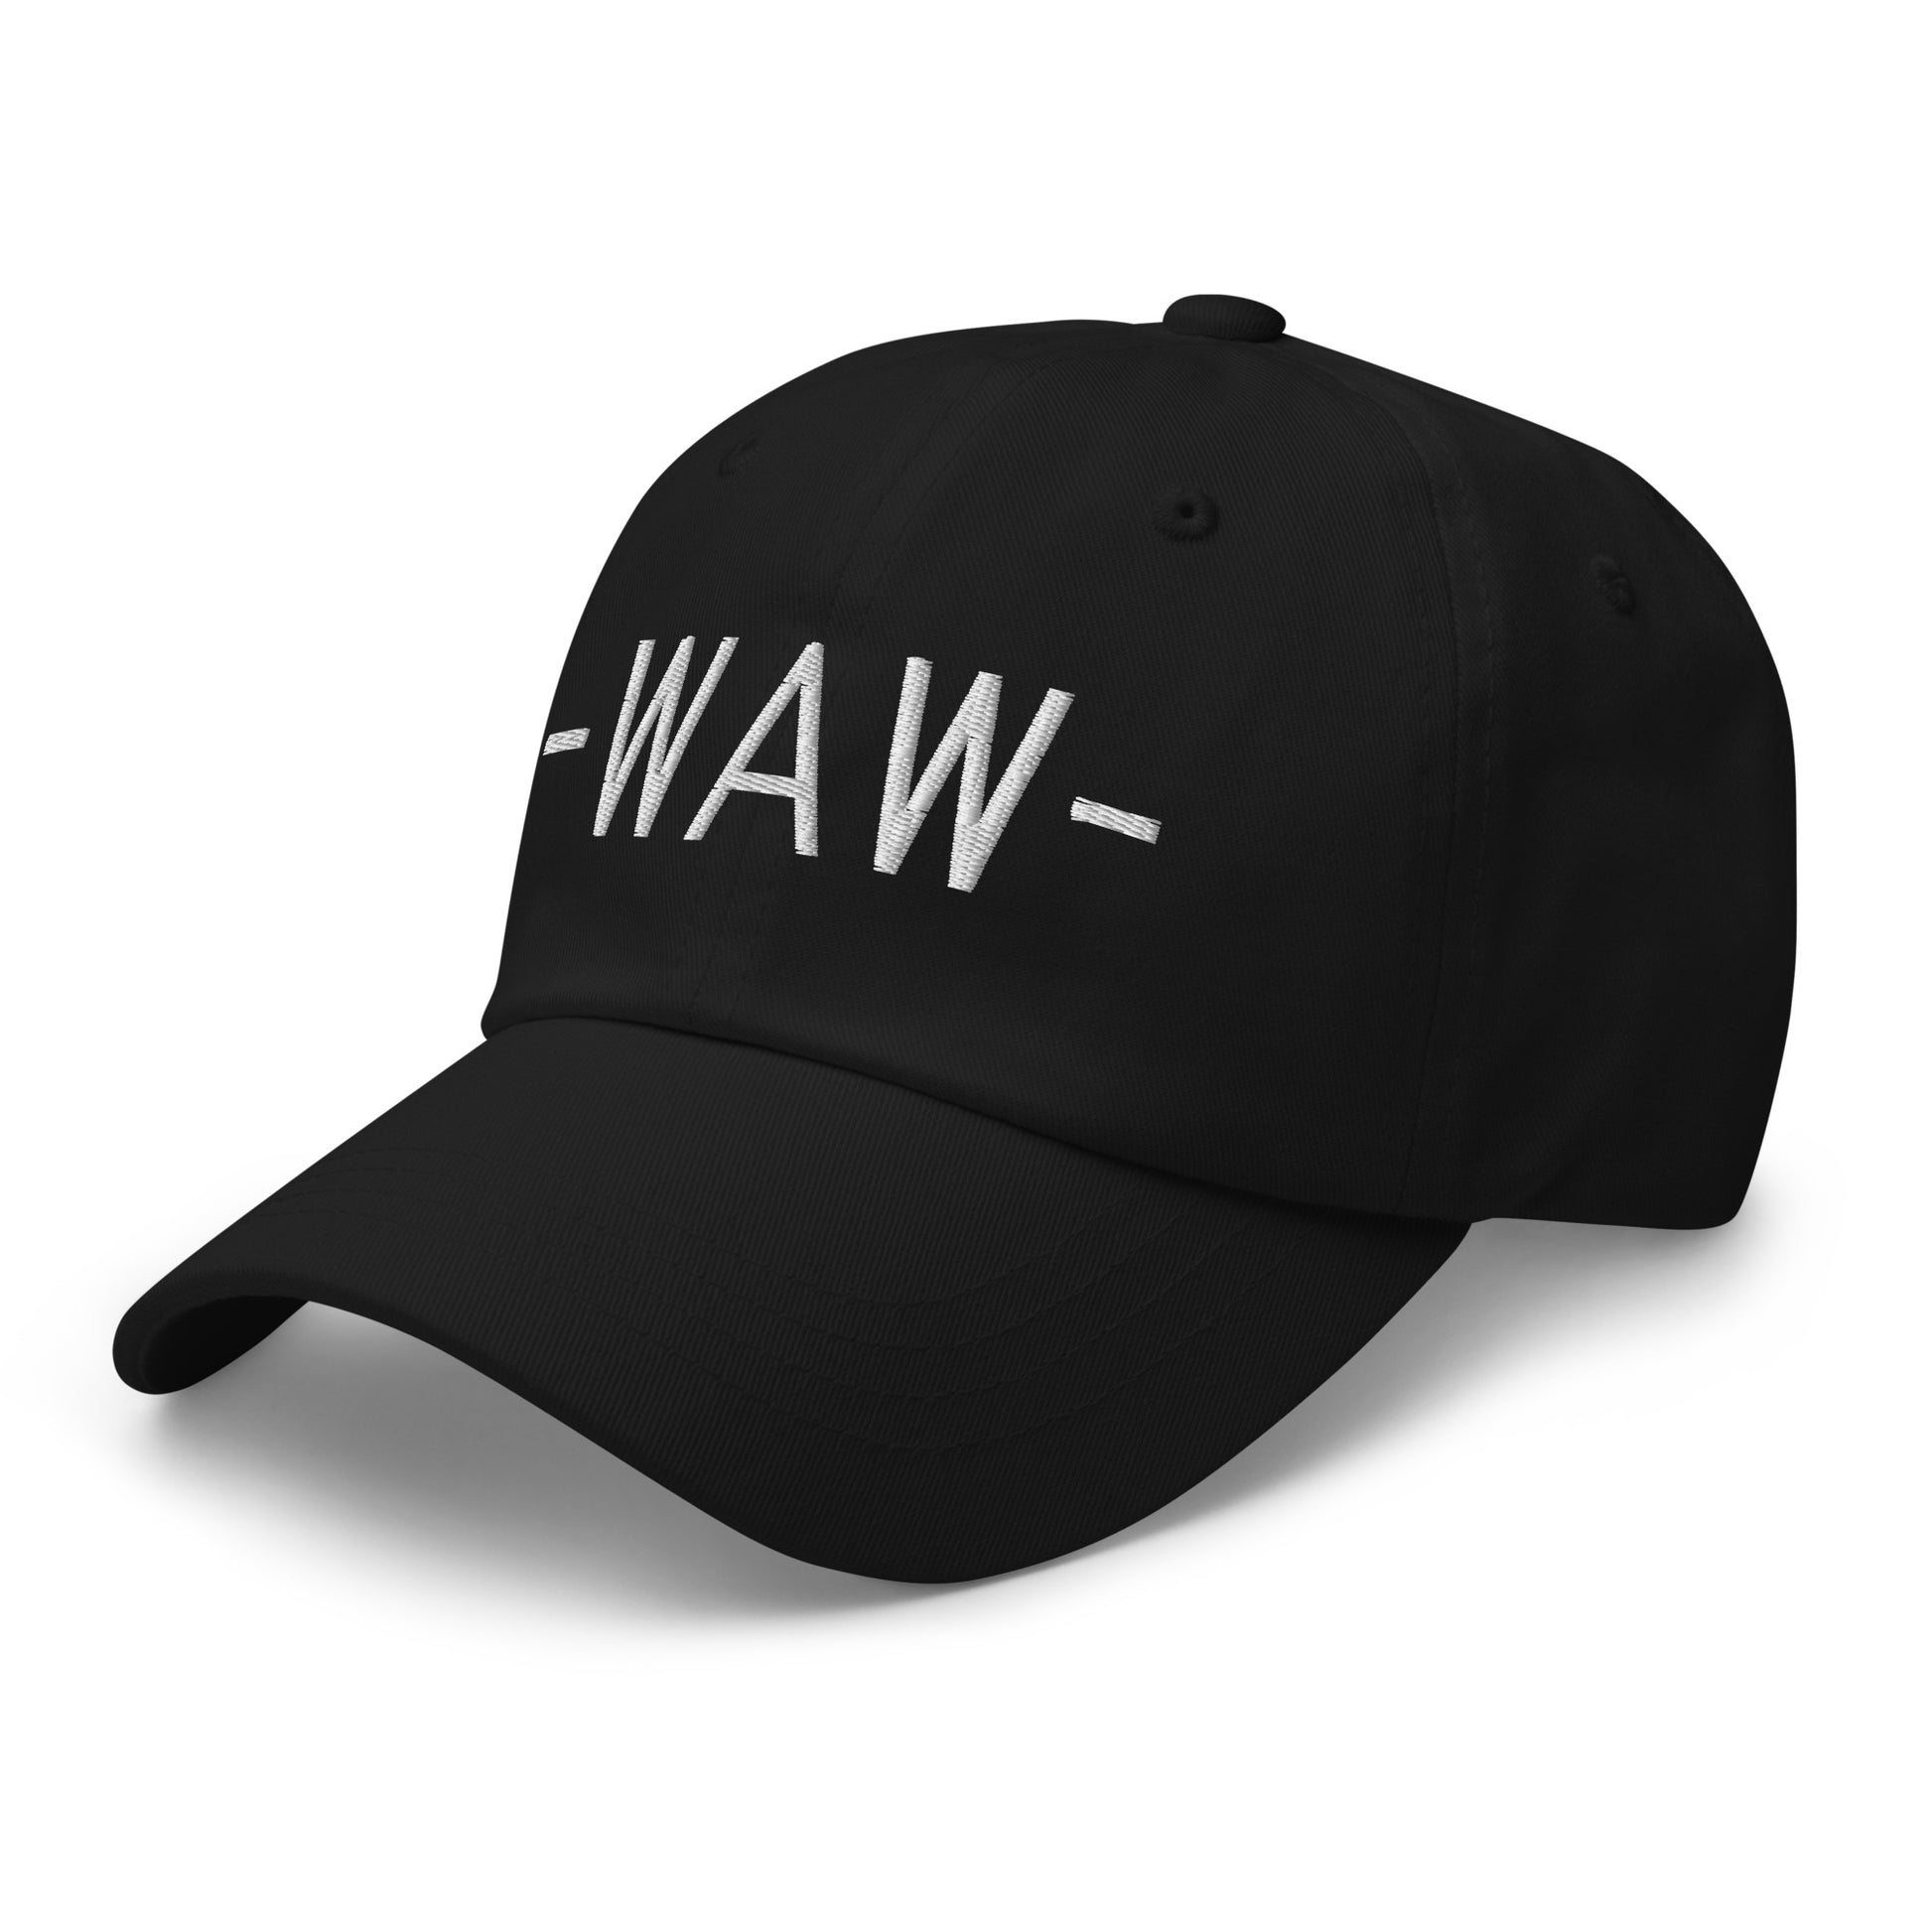 Souvenir Baseball Cap - White • WAW Warsaw • YHM Designs - Image 13